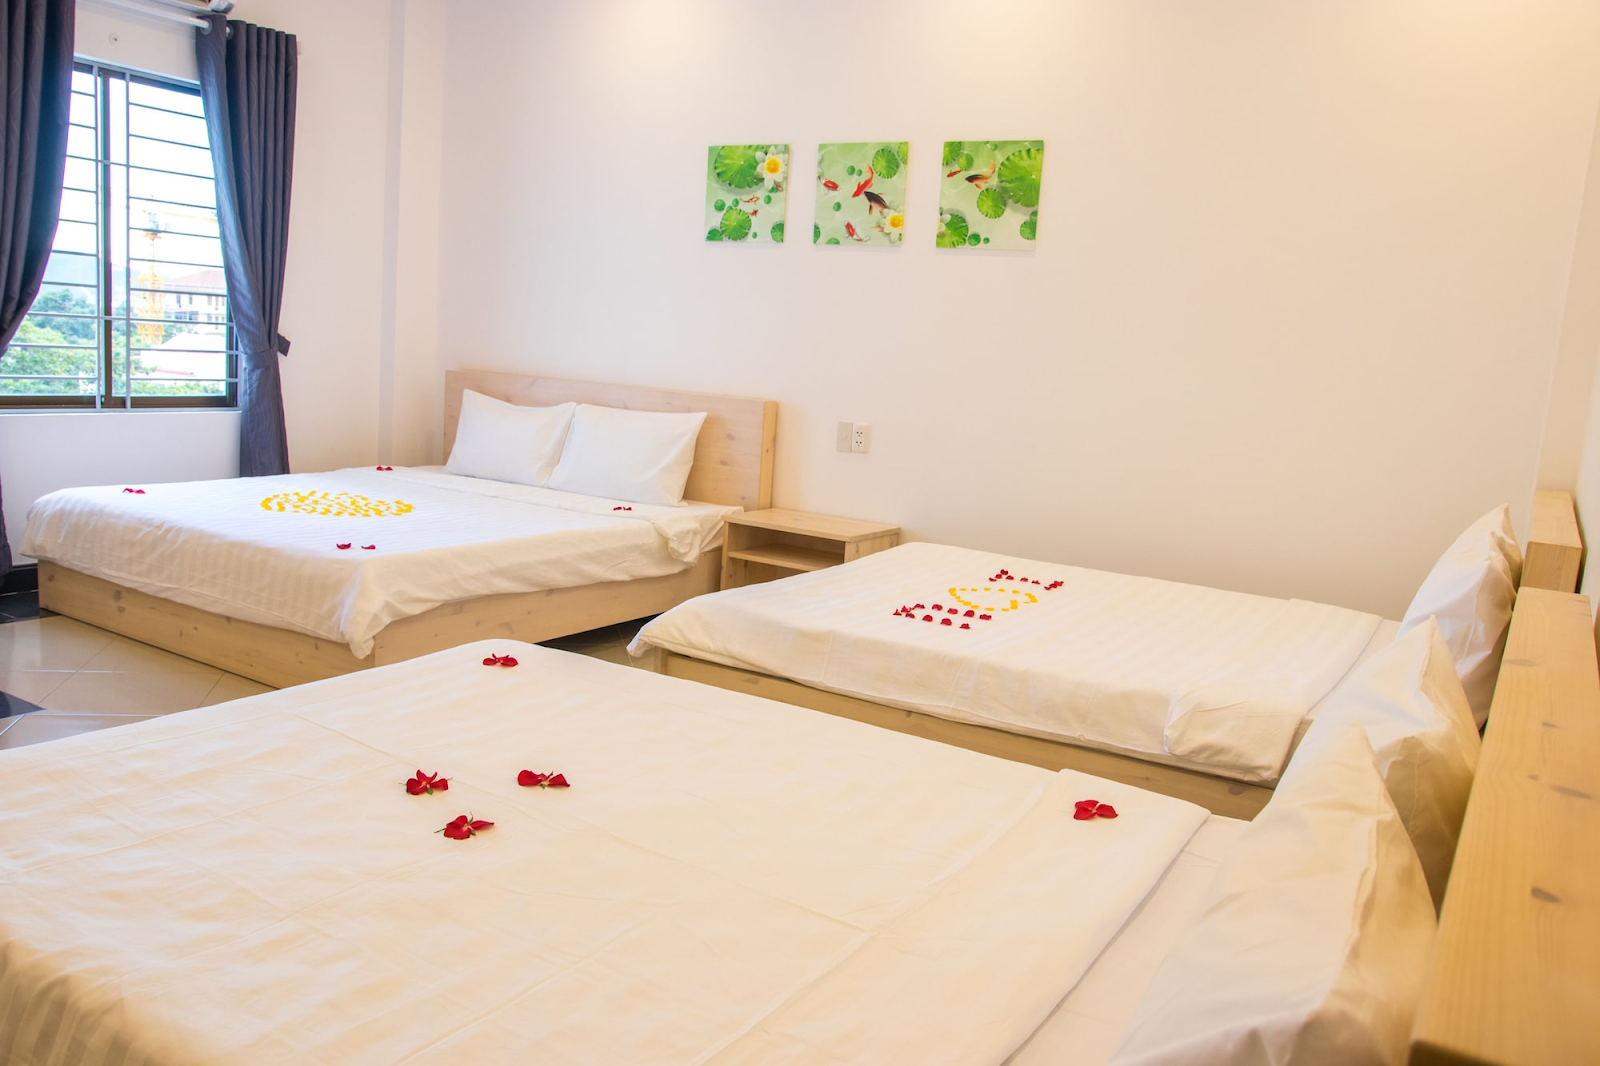 Khách sạn Maika Nha Trang được đánh giá cao về sự sạch sẽ và không gian phòng thoáng đãng (Nguồn: Internet)